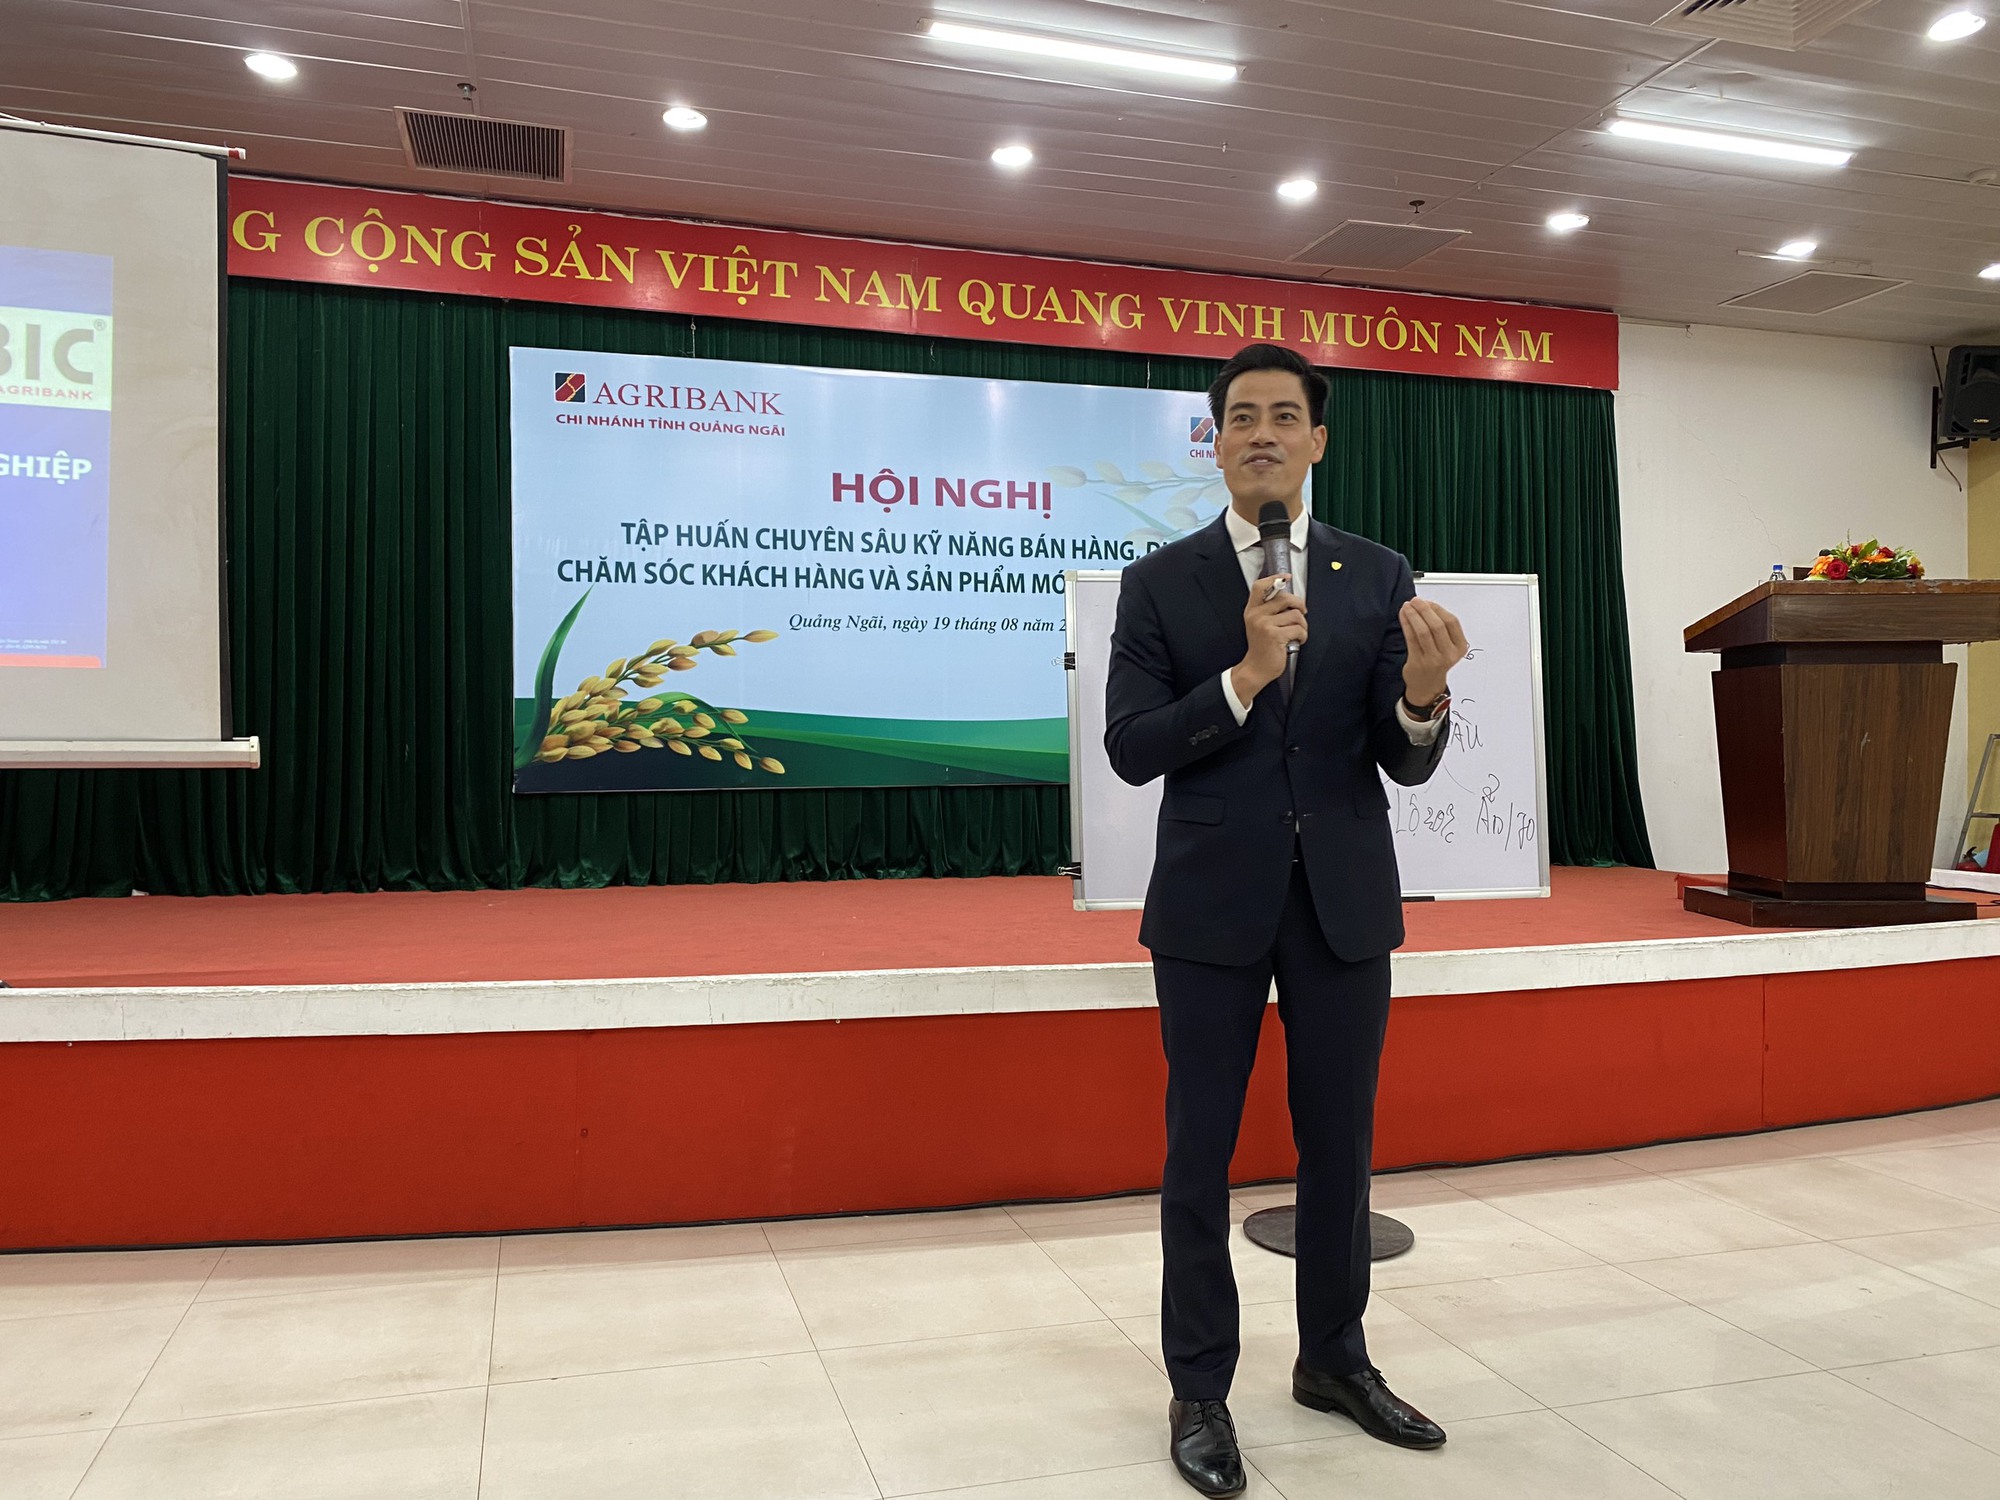 Bảo hiểm Agribank Đà Nẵng tổ chức hội nghị nâng cao kỹ năng, nghiệp vụ chăm sóc khách hàng - Ảnh 3.